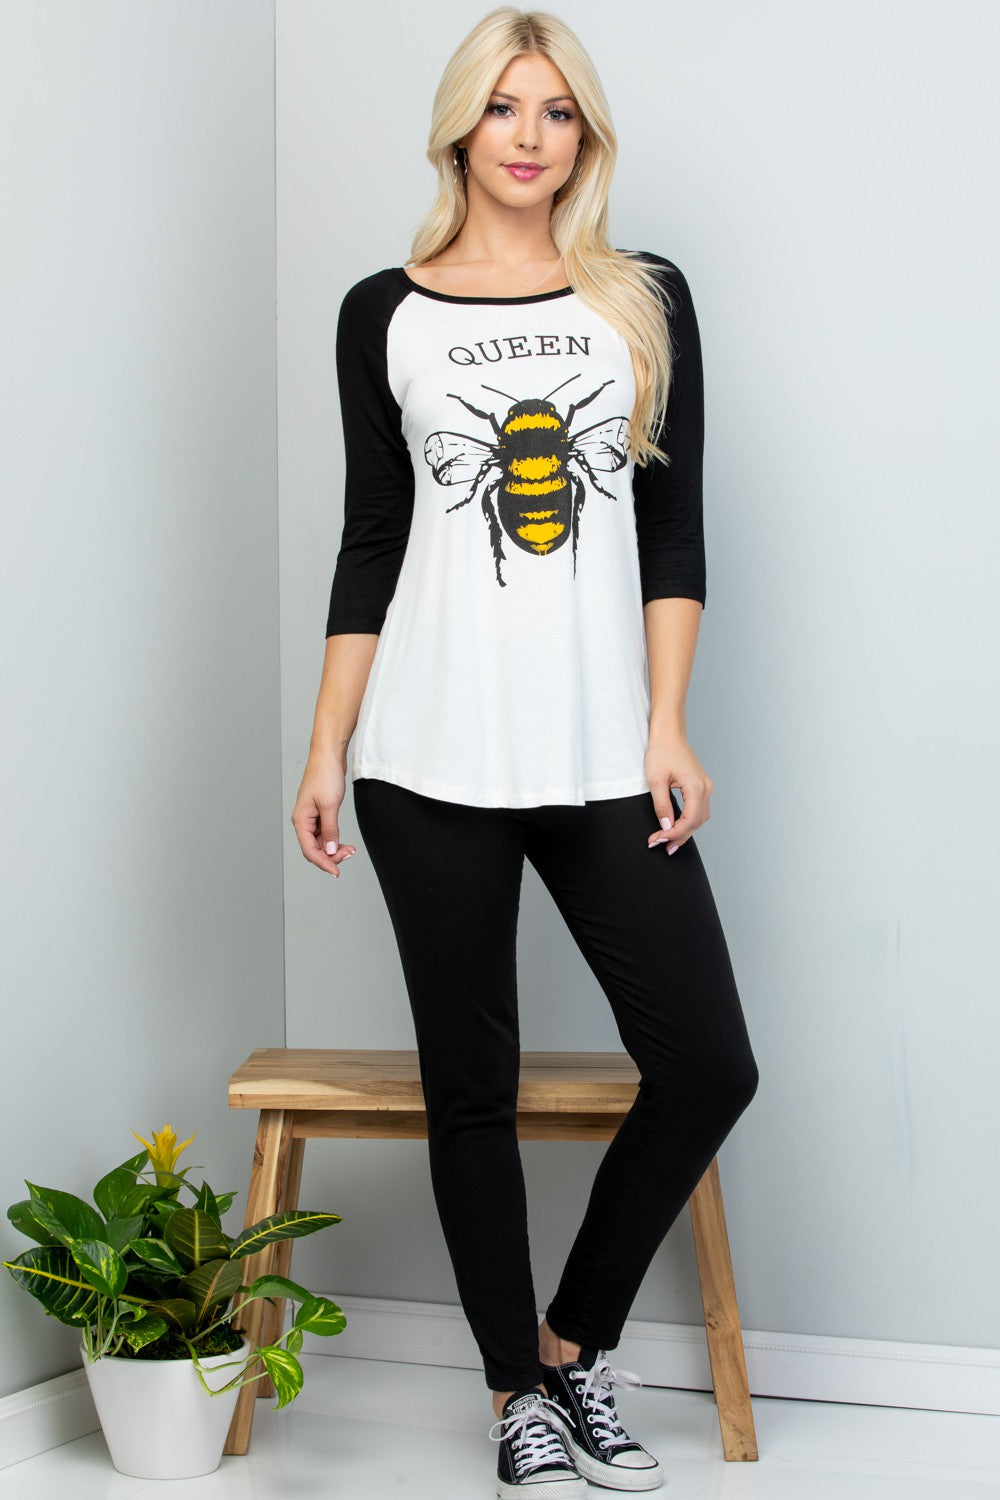 Queen Bee Raglan Shirt